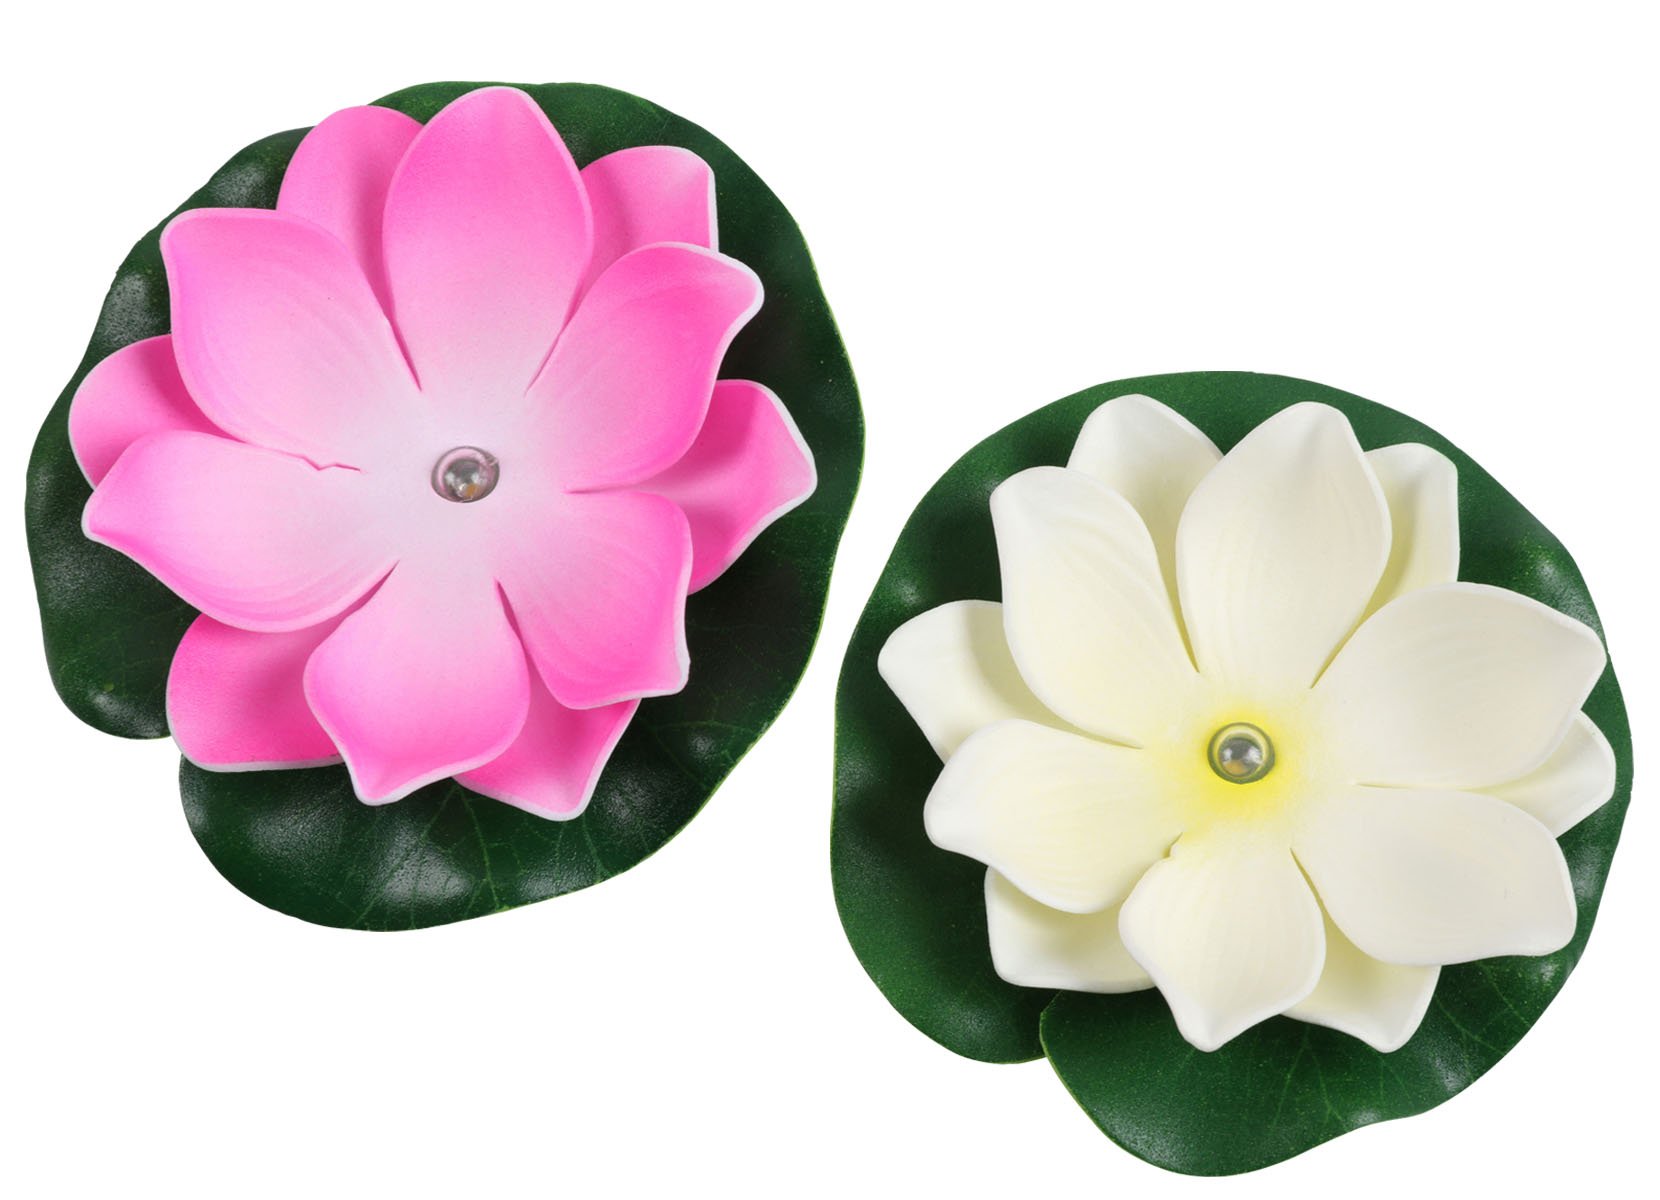 Schwimmende Lotusblüte mit LED Farbwechsler 10cm